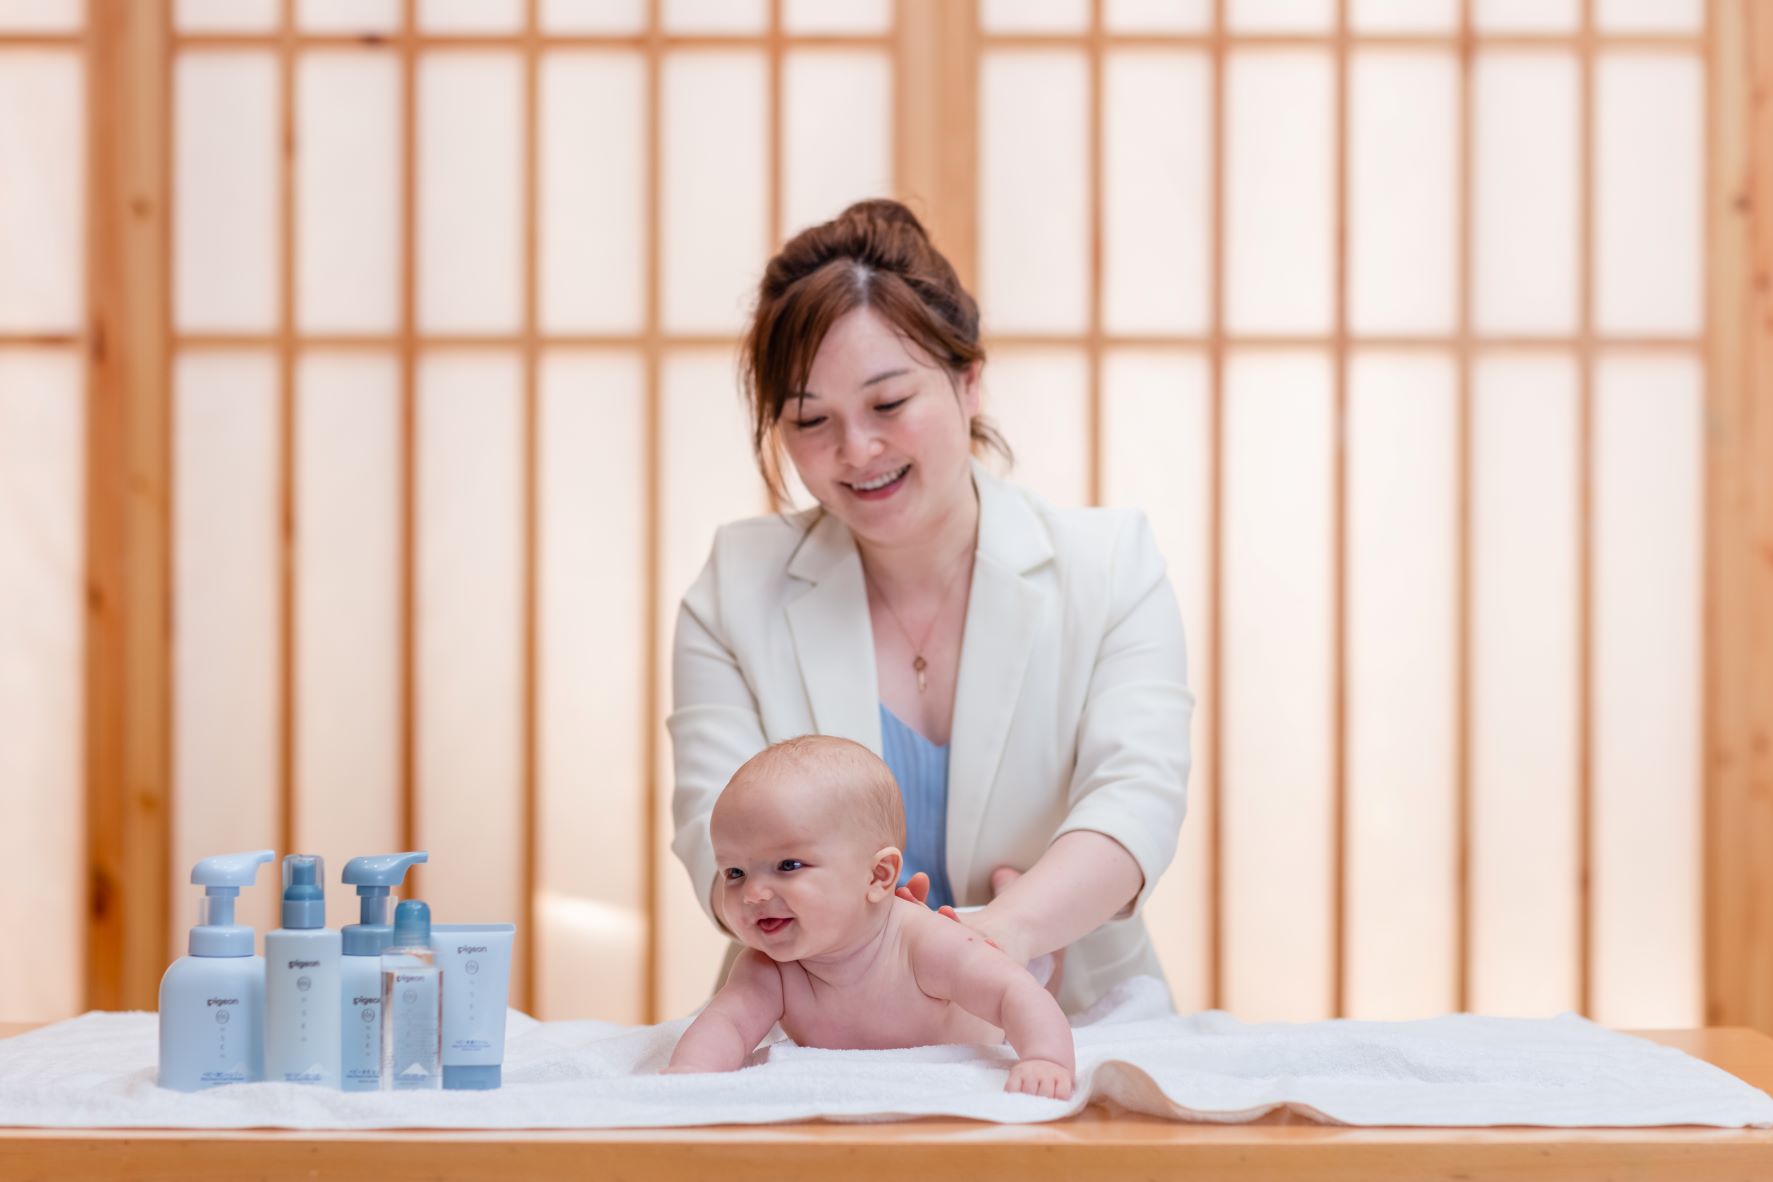 温泉水活力 舒缓宝宝肌——贝亲推出全新婴儿温泉舒缓系列产品